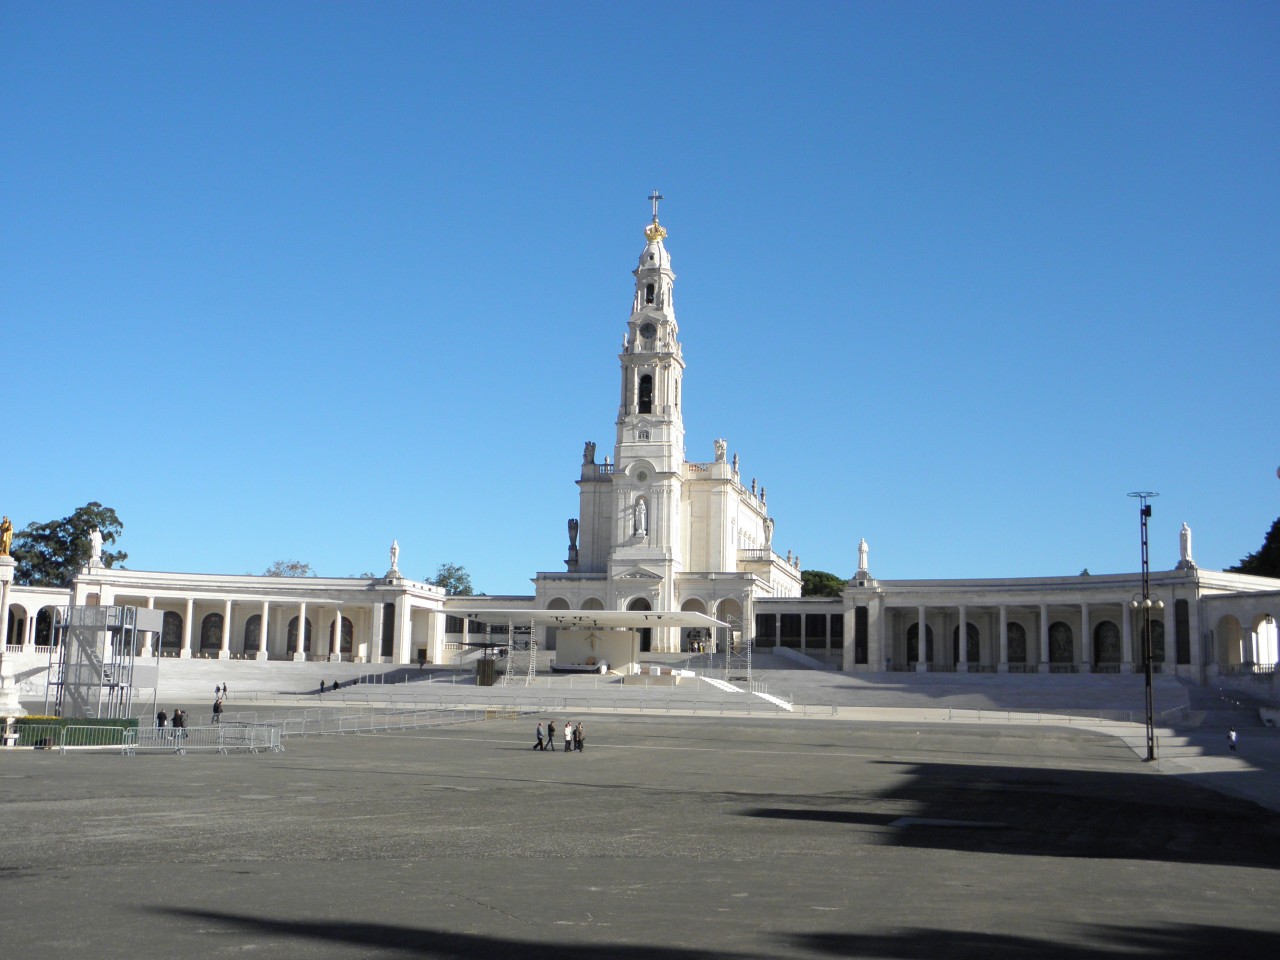 Fatima- Basilica of Our Lady